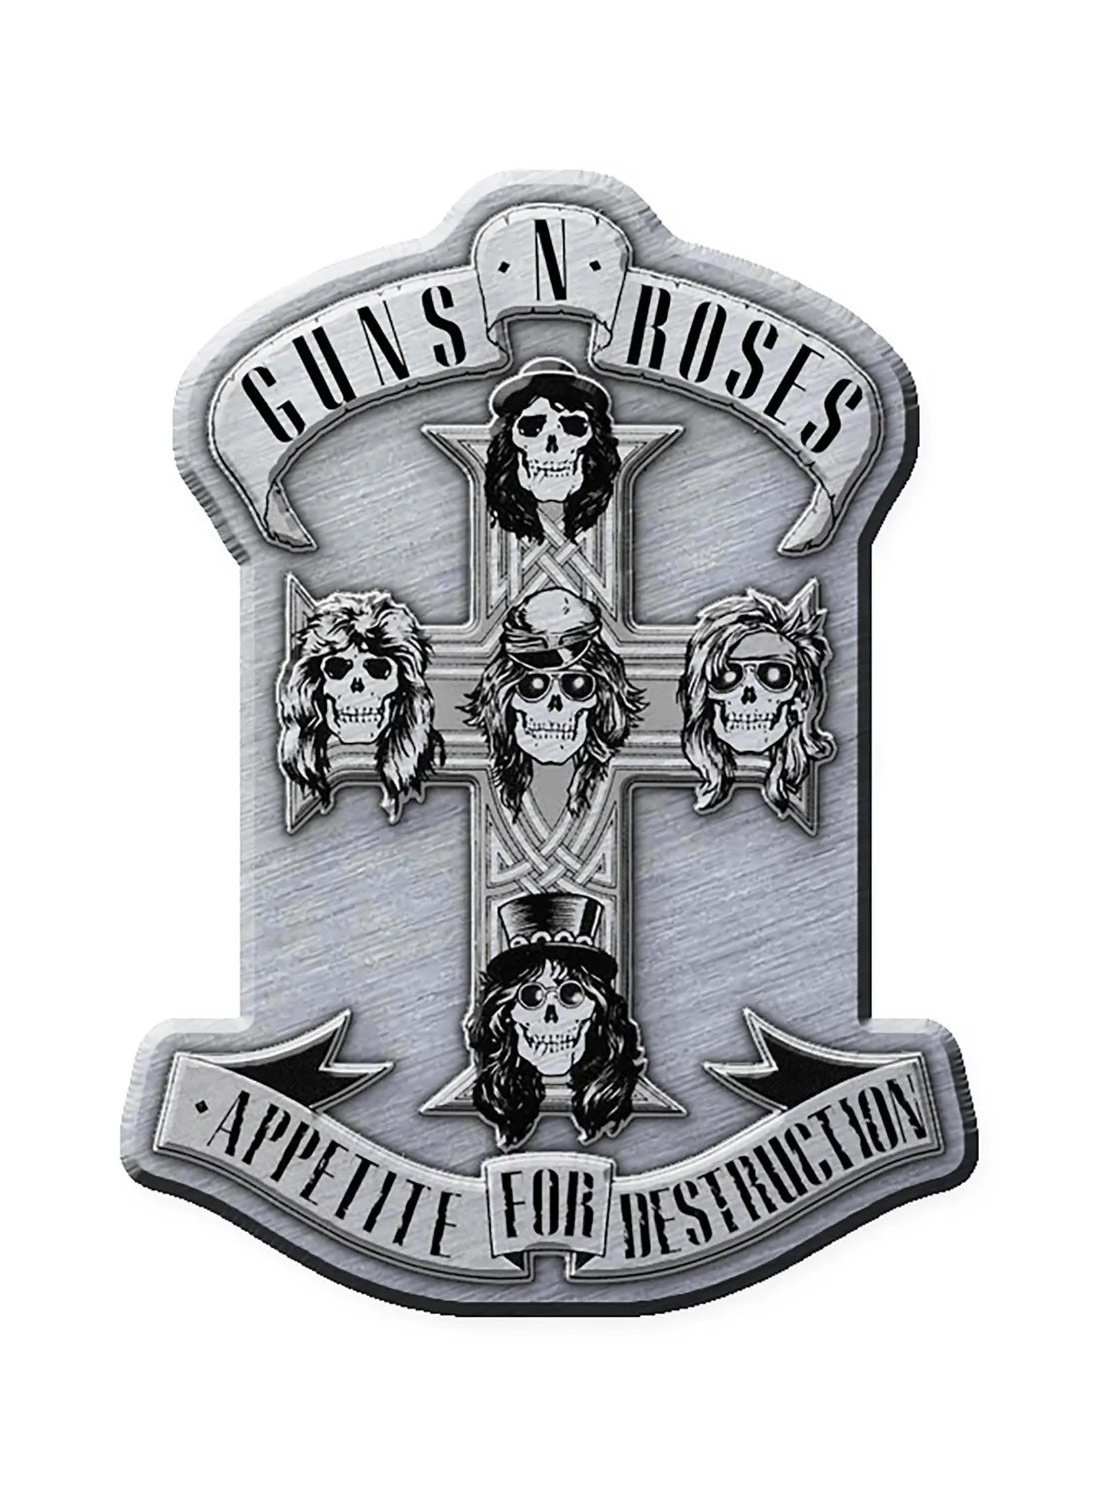 Guns N' Roses Appetite Metal Pin Badge